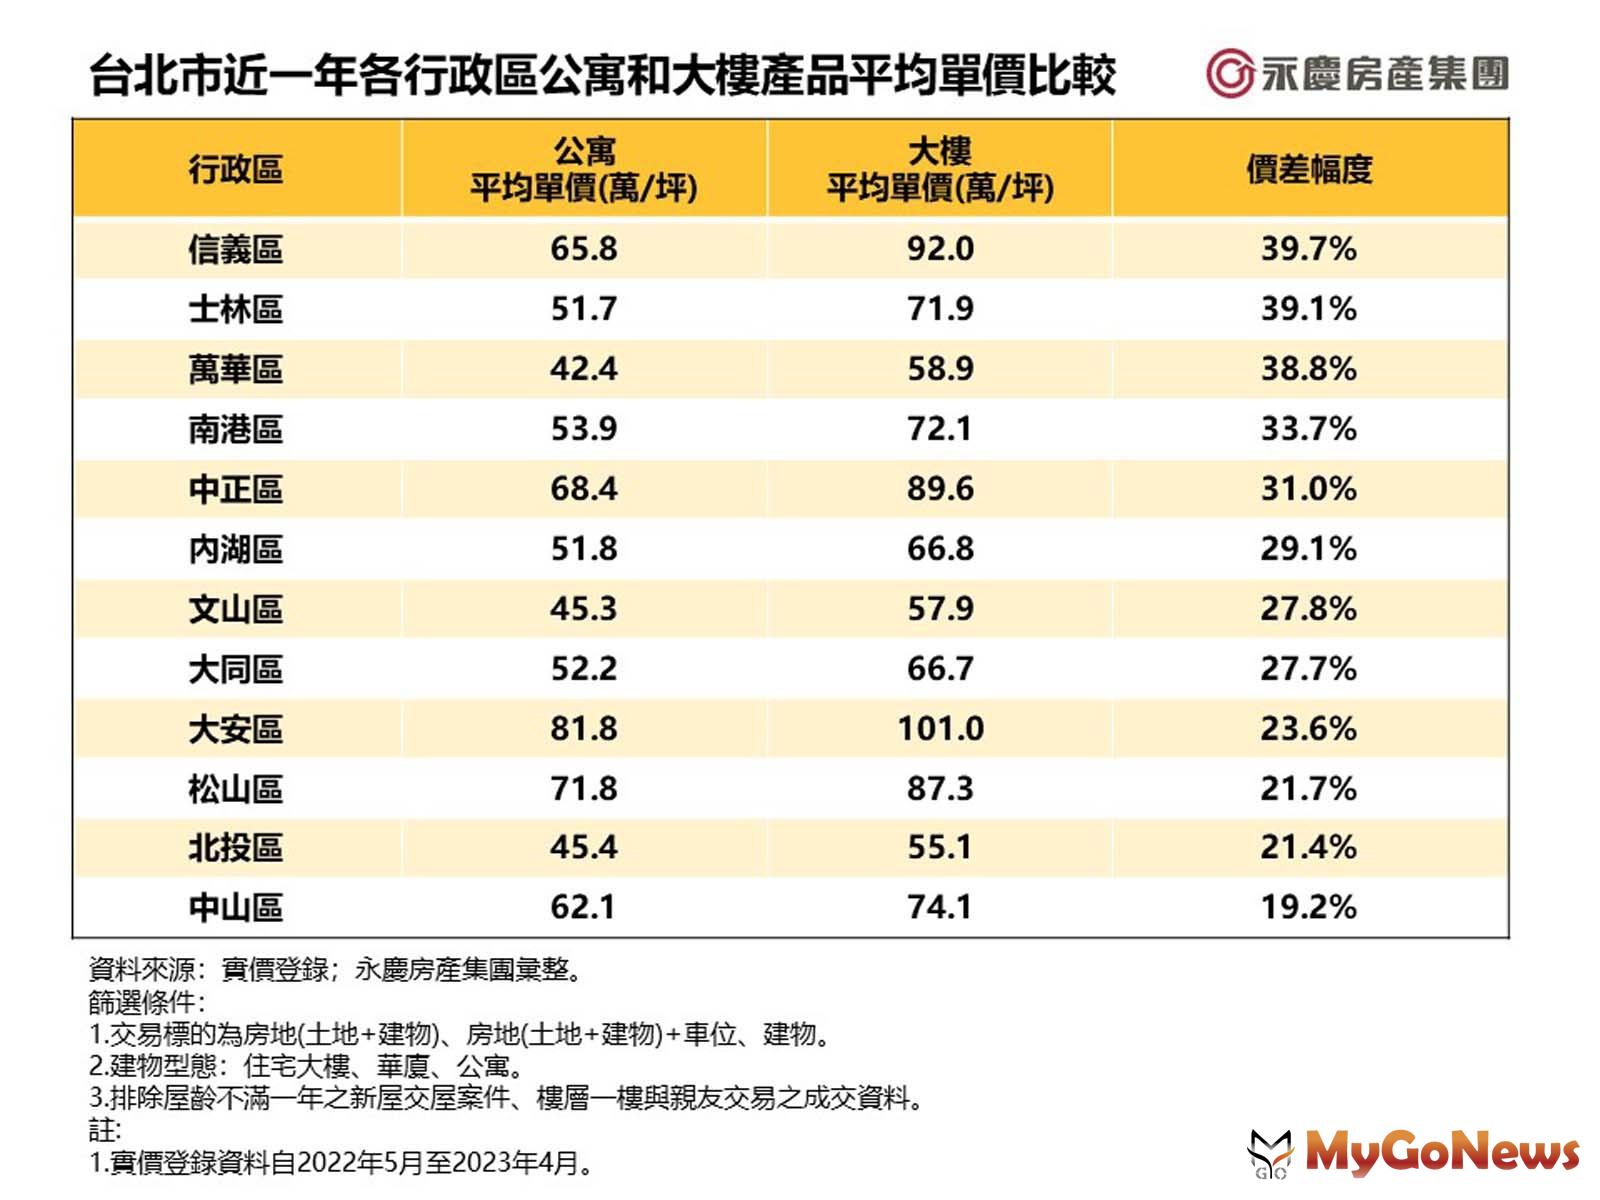 台北市近一年各行政區公寓和大樓產品平均單價比較 MyGoNews房地產新聞 市場快訊